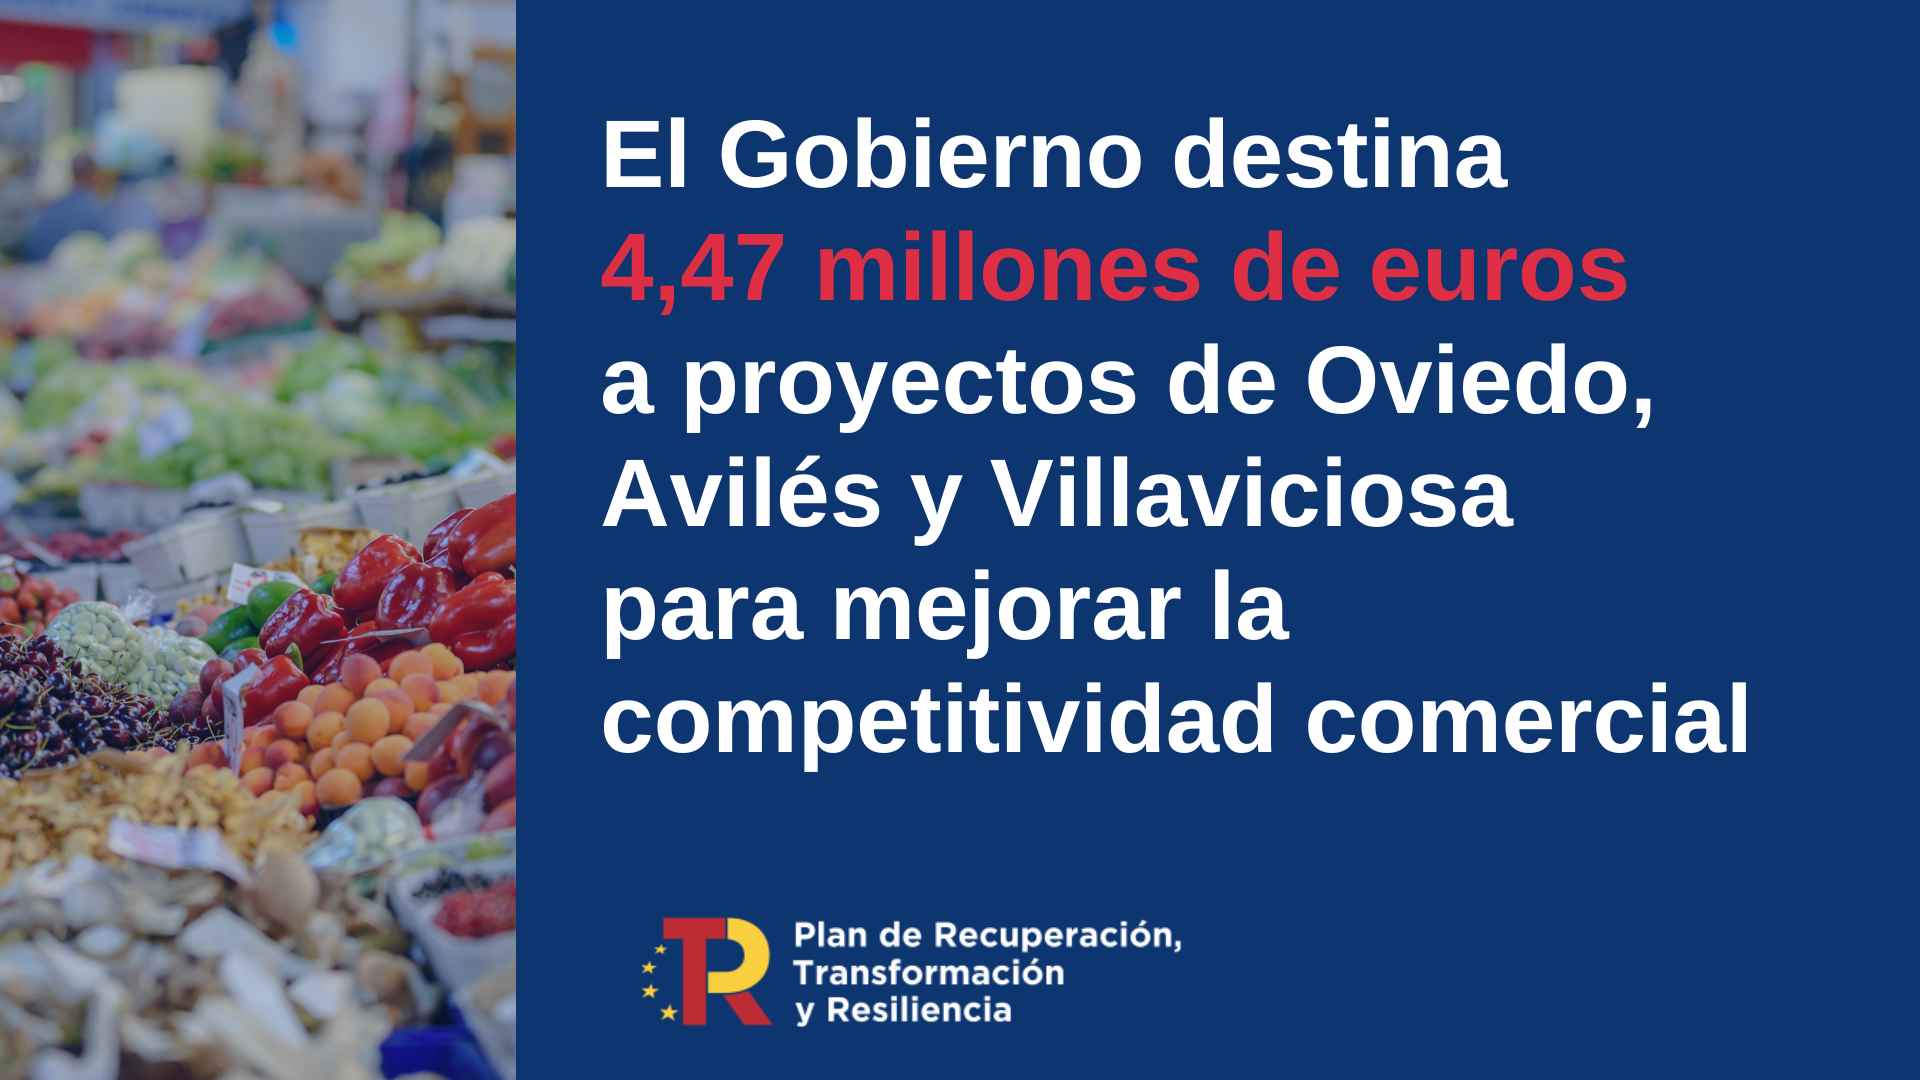 El Ministerio de Industria, Comercio y Turismo concede 4,47 millones de euros a proyectos de Oviedo, Avilés y Villaviciosa para impulsar la competitividad del sector comercial